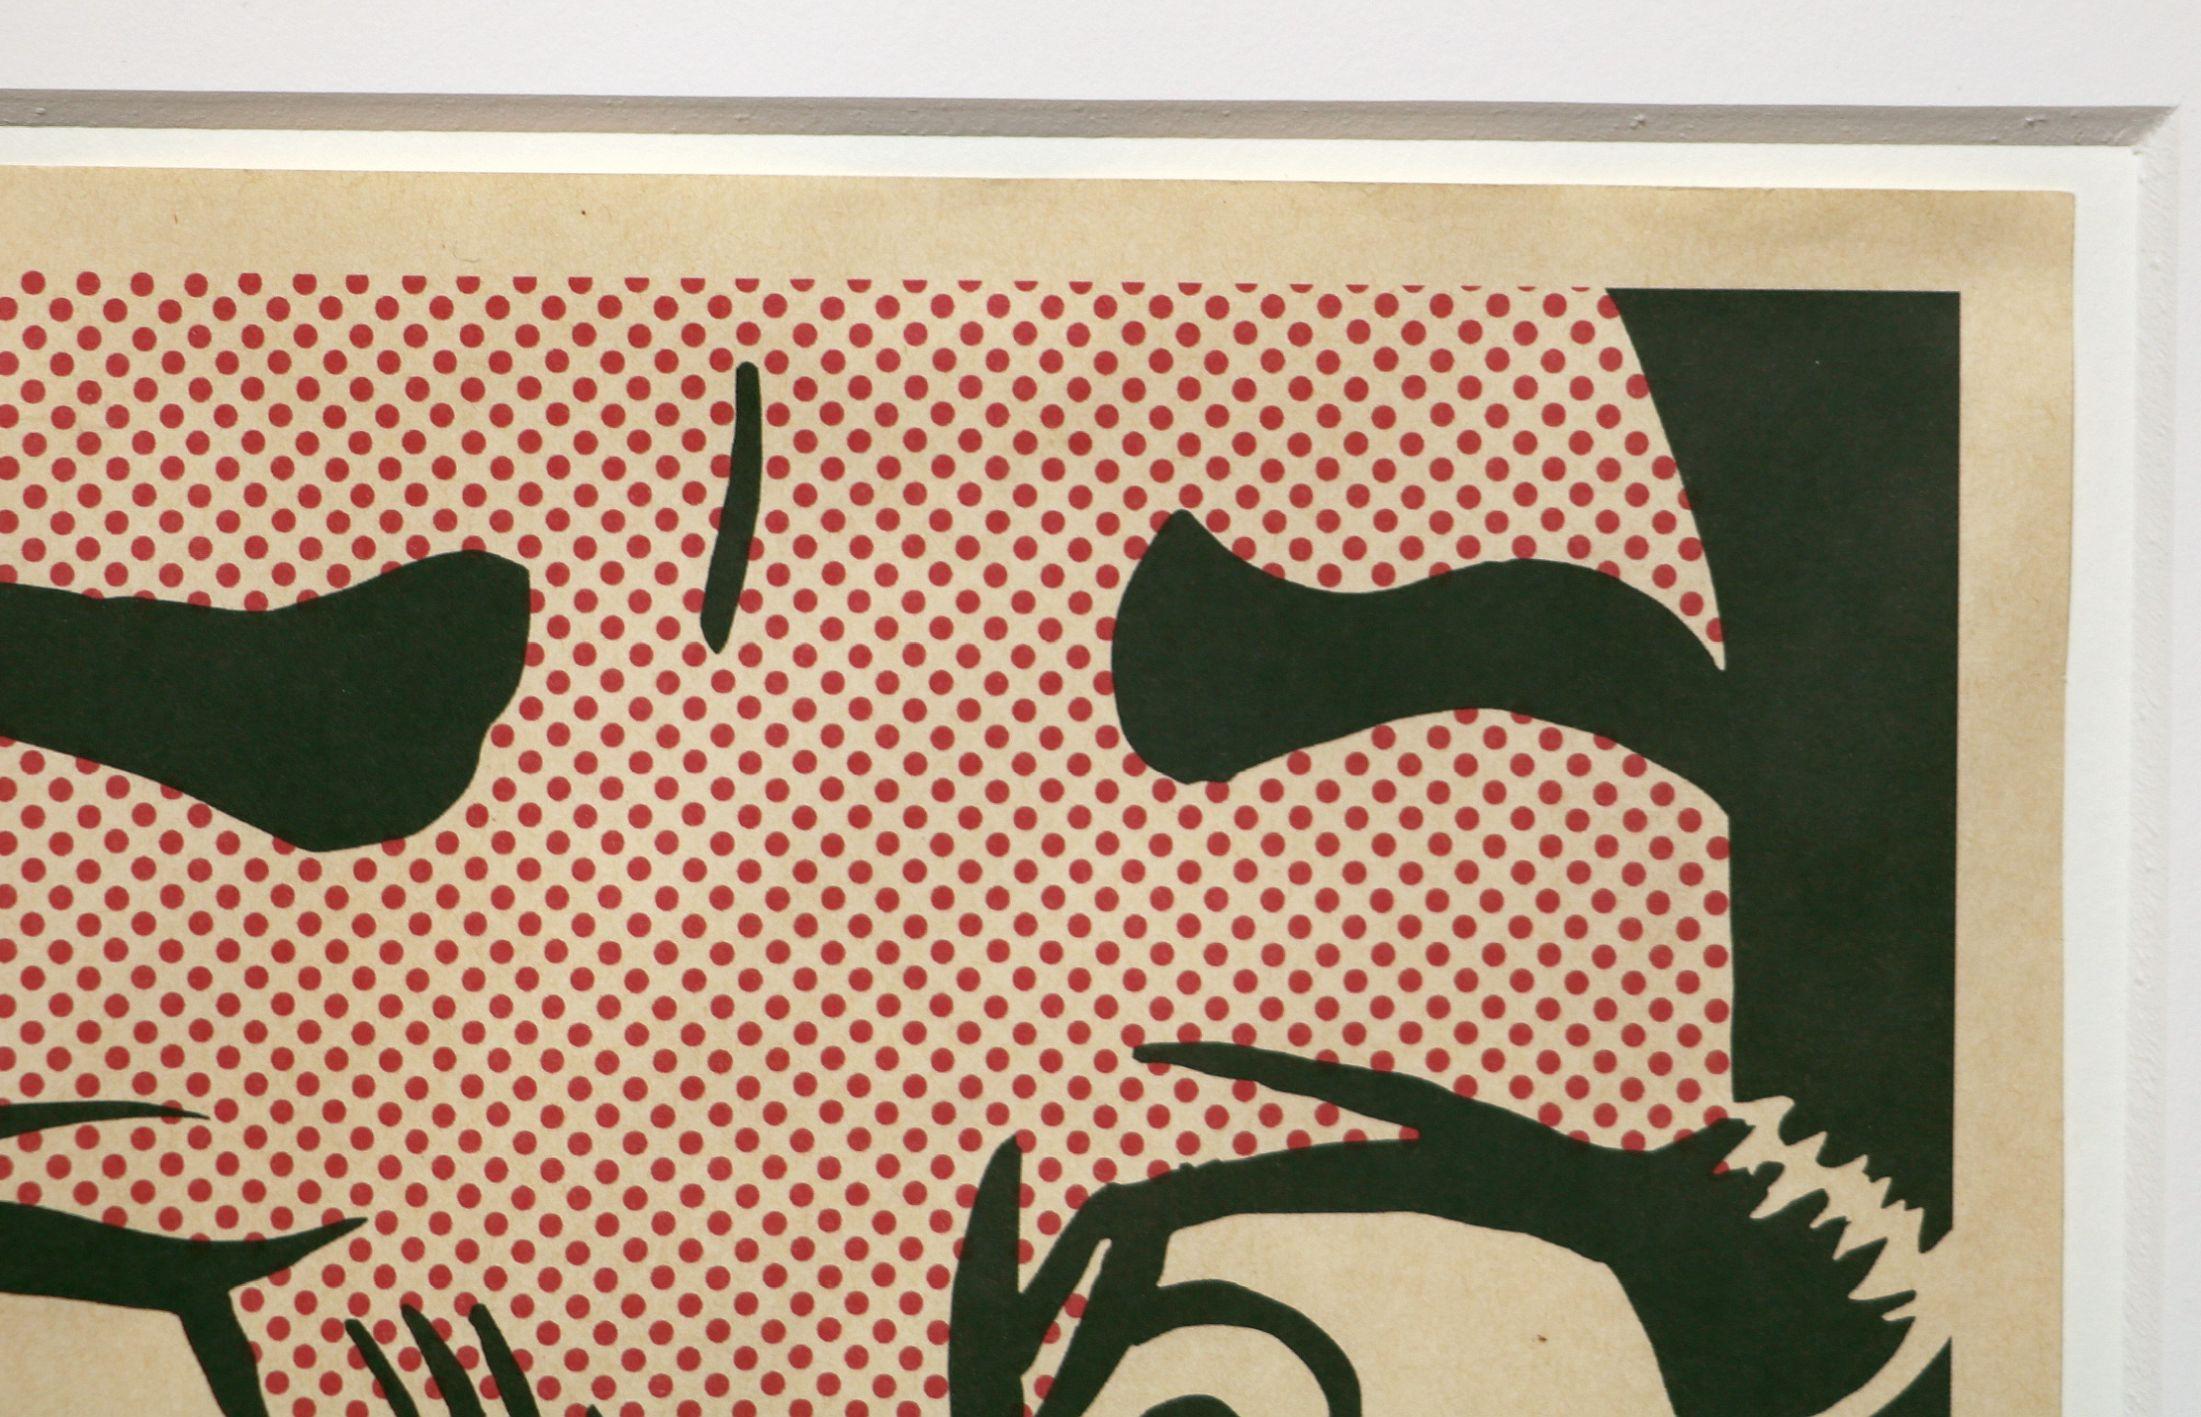 Signé à la main au crayon en bas à droite. Imprimé par Colorcraft, New York. Publié par Leo Castelli Gallery, New York. D'une édition de taille inconnue. Catalogue Raisonné The Prints of Roy Lichtenstein 1948-1997 : Corlett II.1.